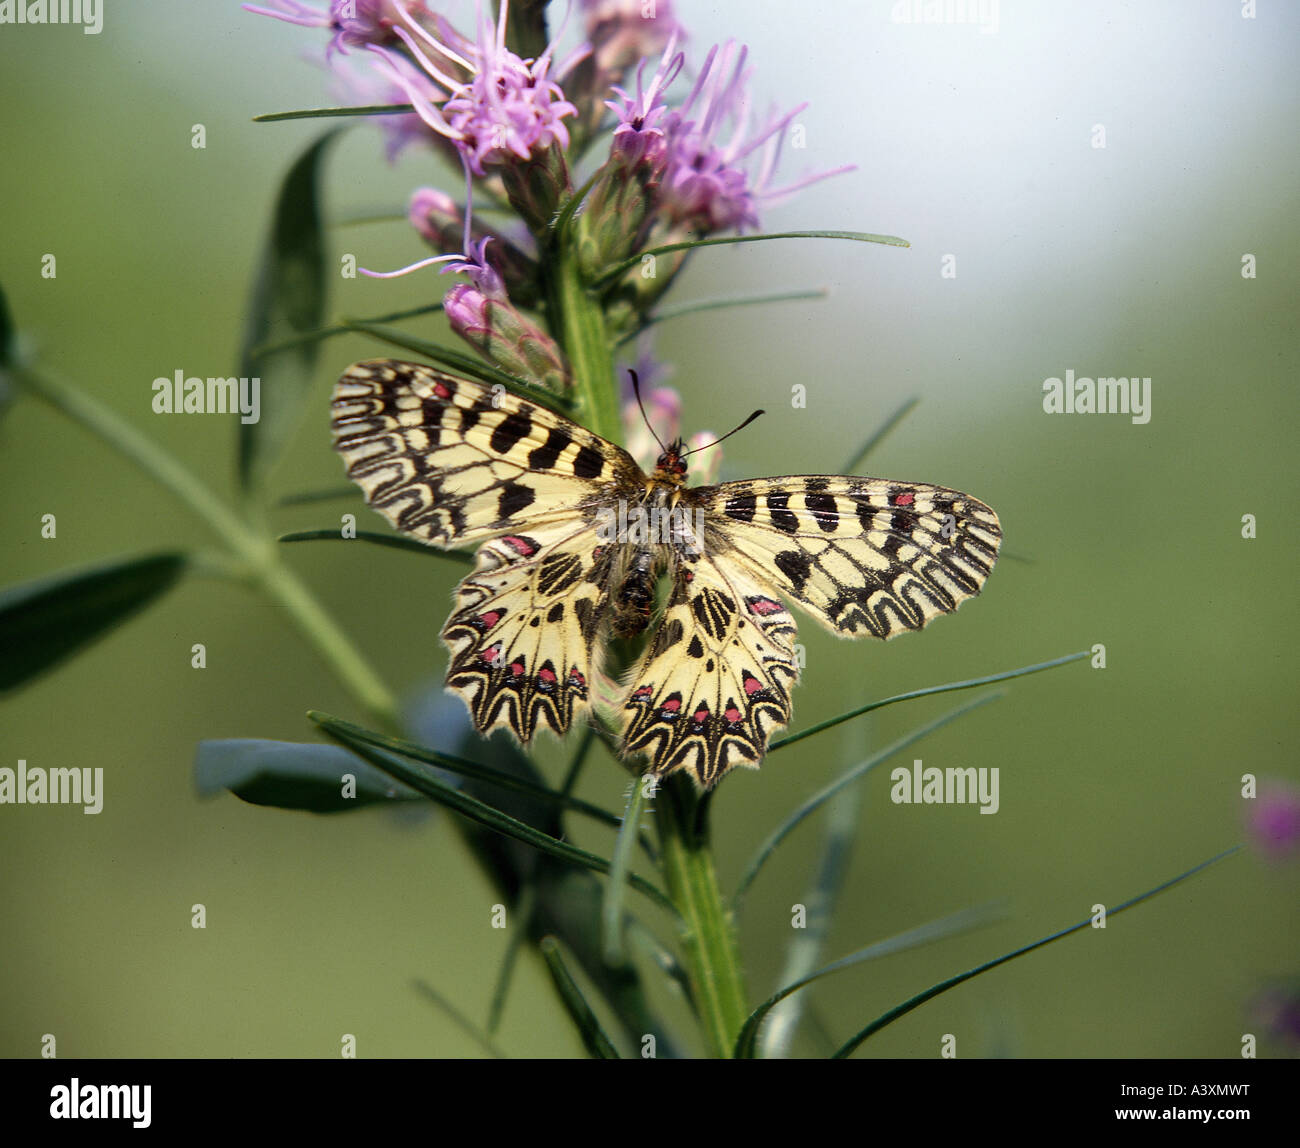 Zoologia / animali, insetti, farfalle, Zerynthia, (Zerynthia rumina), a fiore, distribuzione: Spagna, Portogallo, franco meridionale Foto Stock